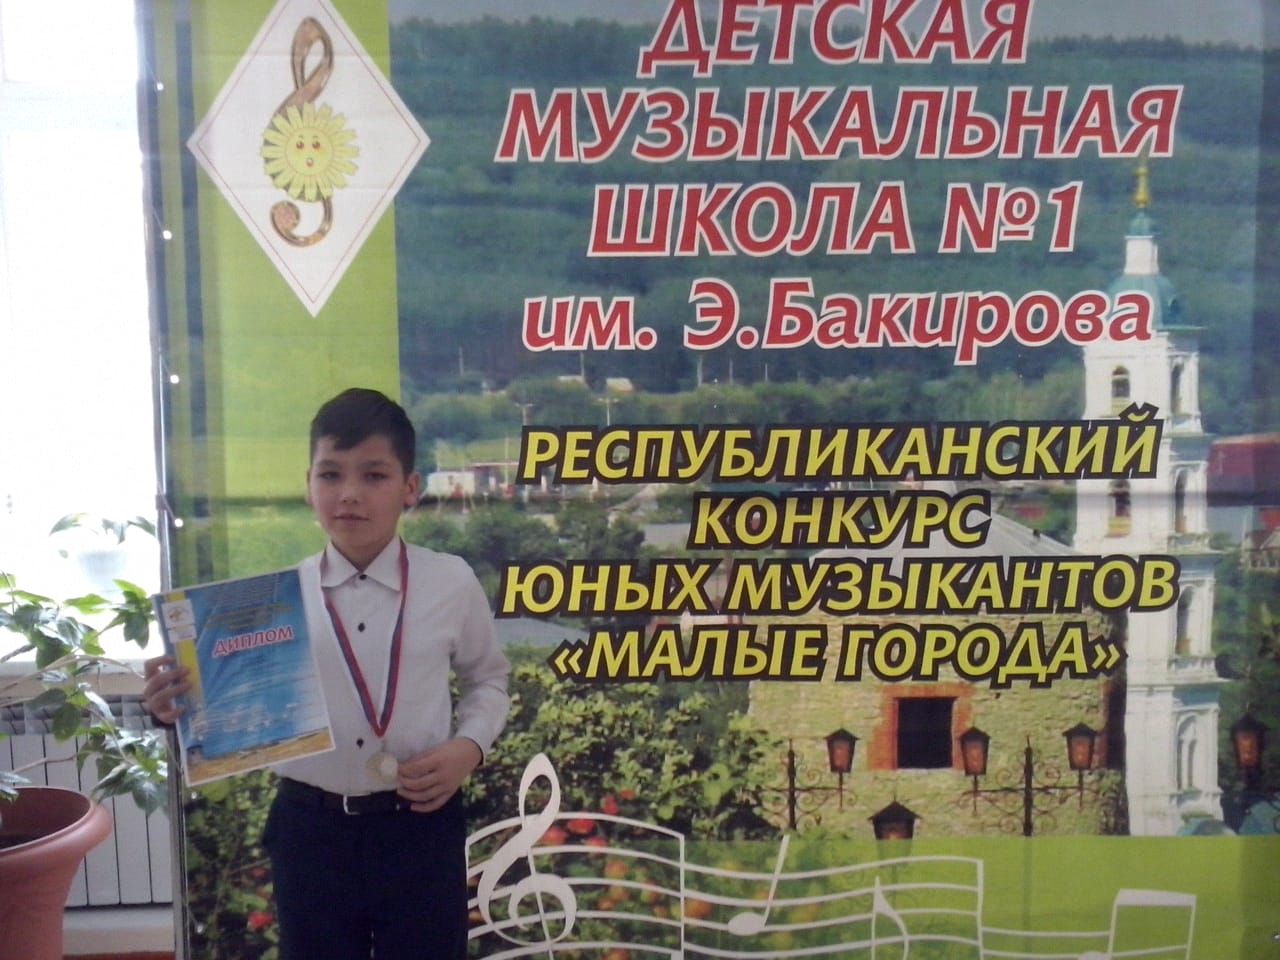 В Елабуге на базе детской музыкальной школы № 1 им. Э. Бакирова прошел Республиканский конкурс юных музыкантов ДМШ и ДШИ "Малые города",